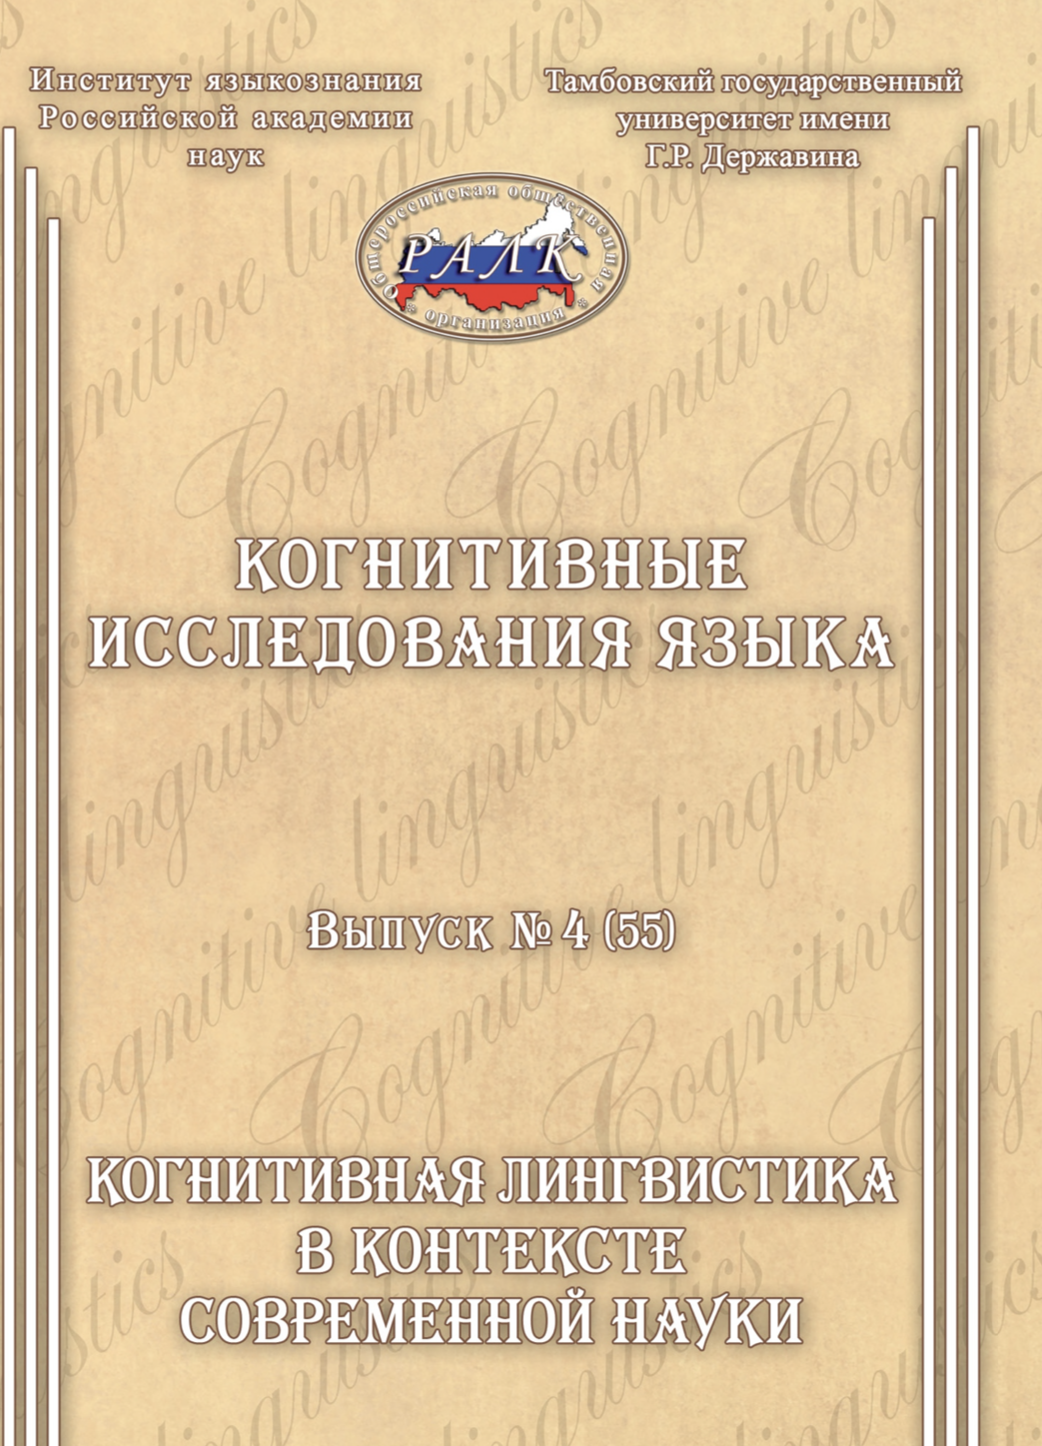 Кушнерук С. Л., Курочкина М. А. (2023). Дискурсивная репрезентация трудовой миграции в социальной сети Telegram